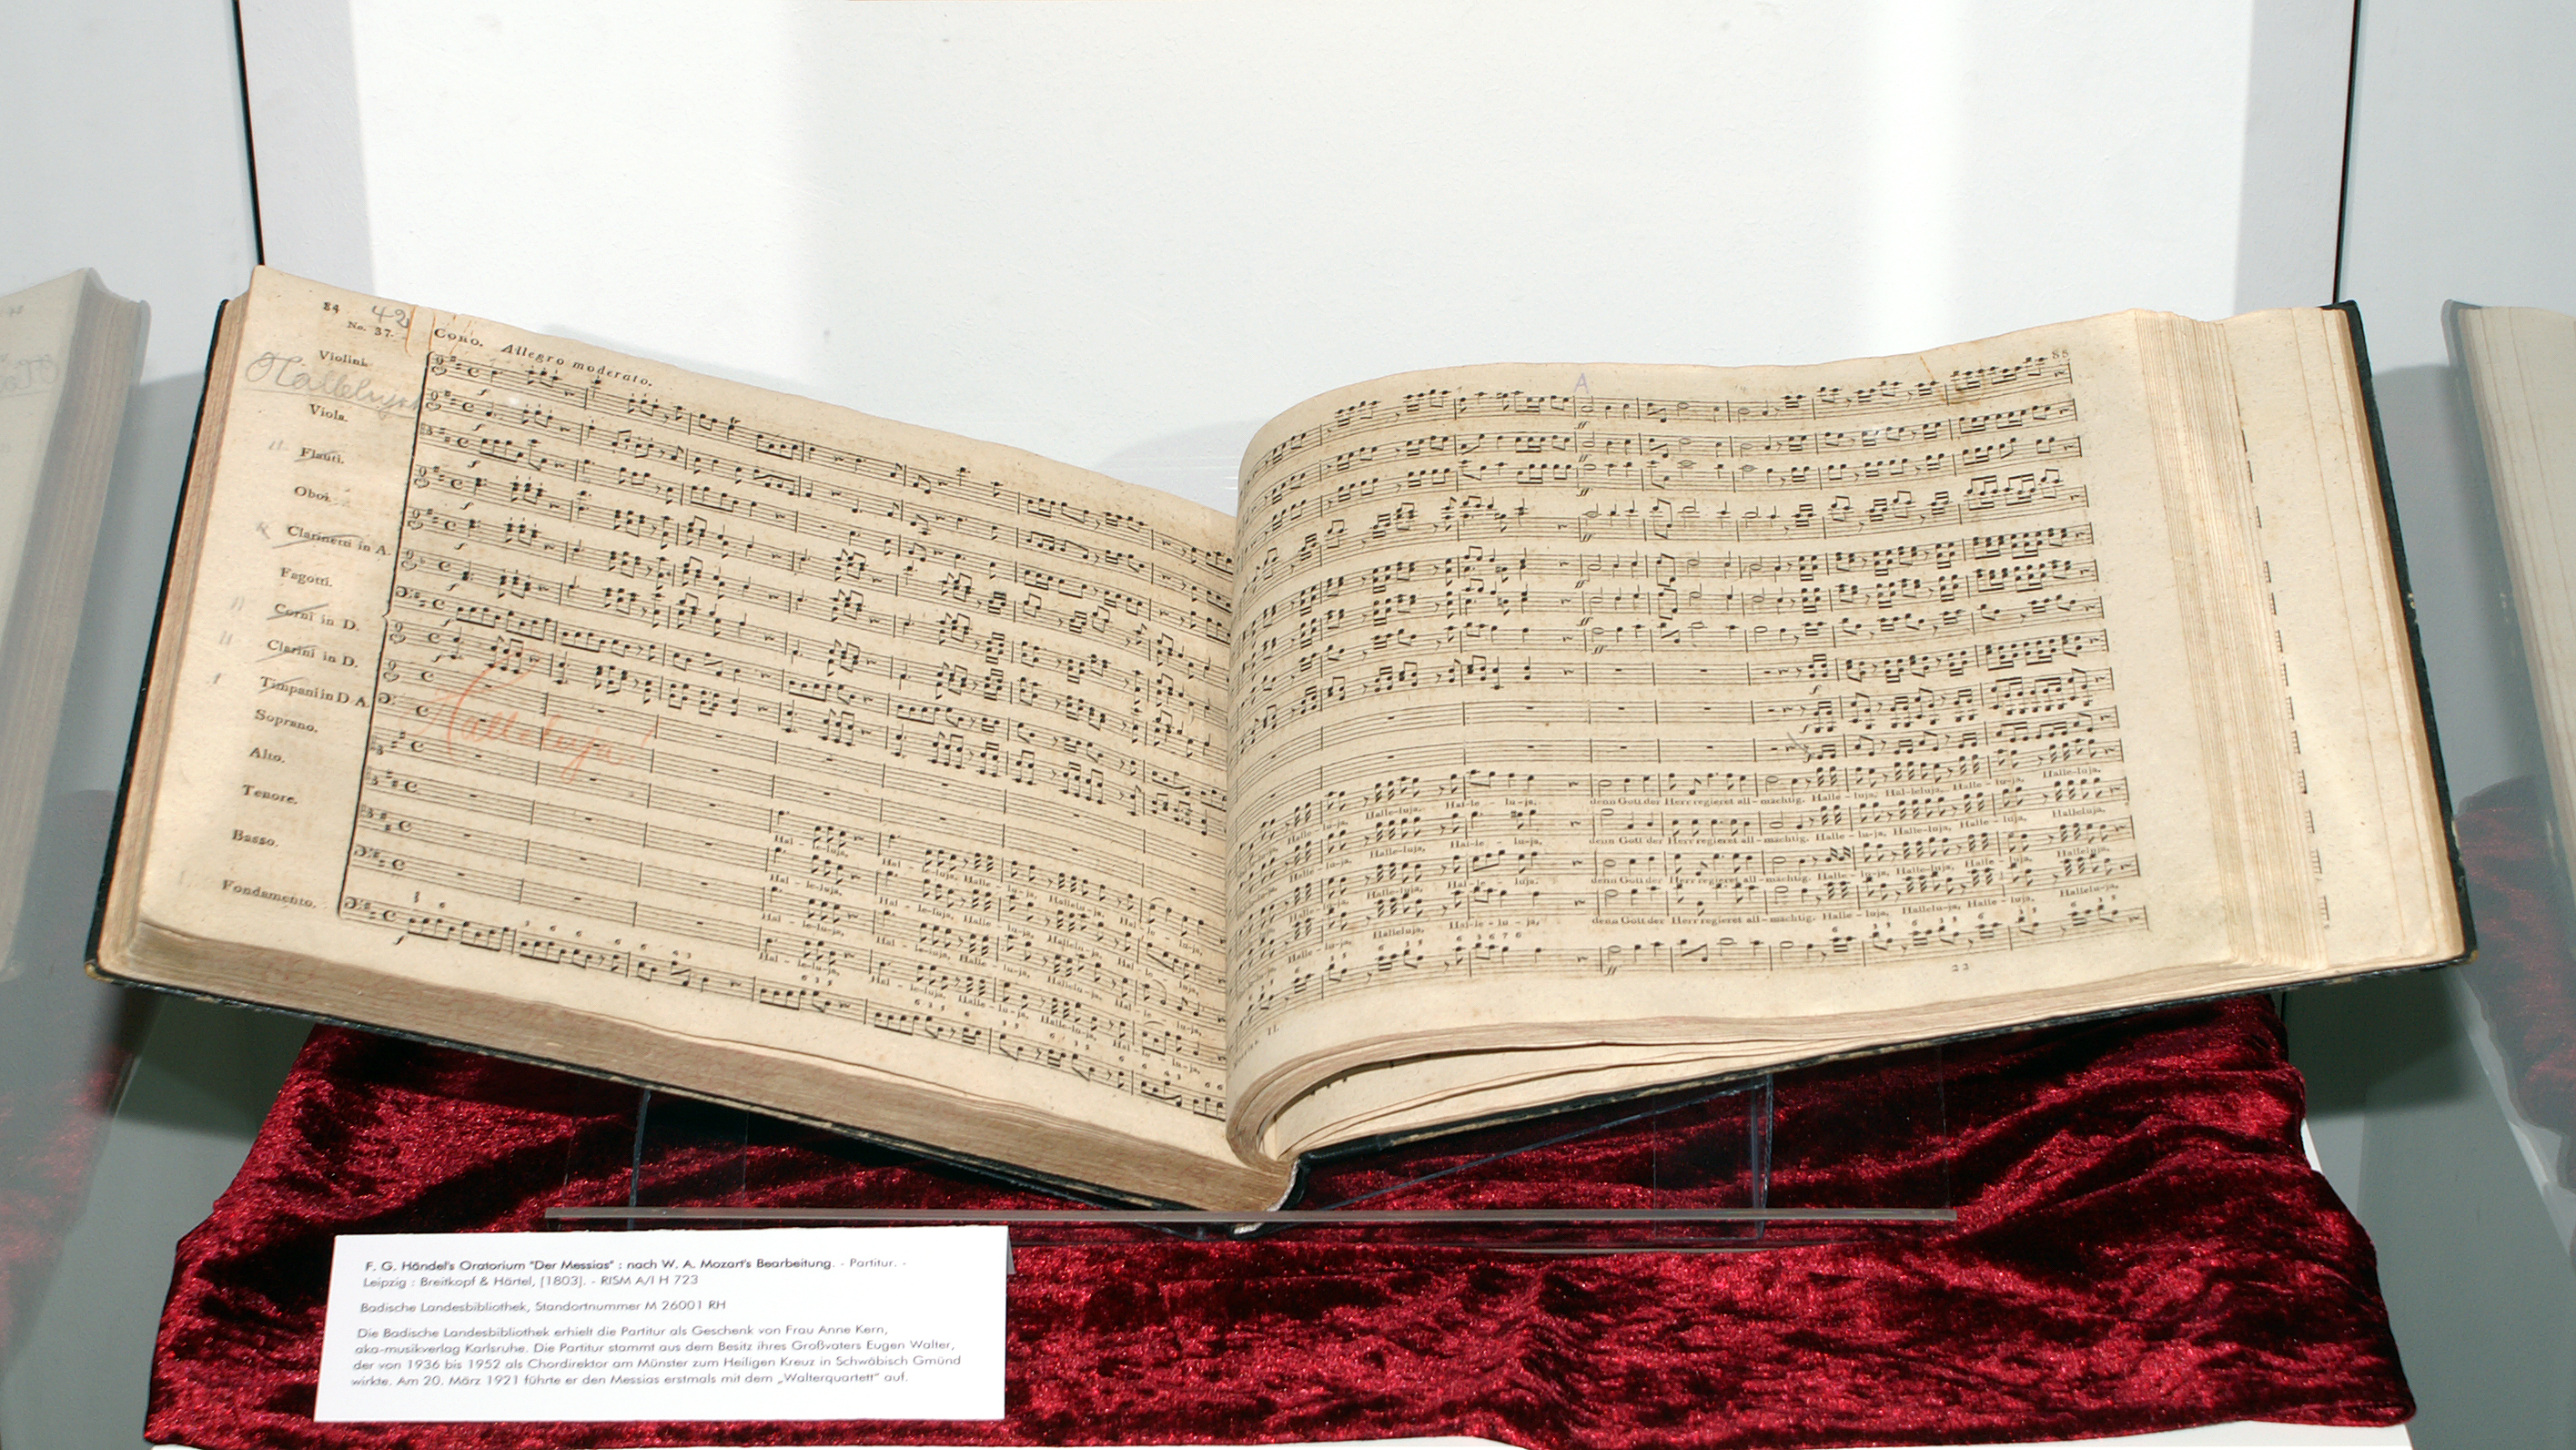 Aufgeschlagen ist Händel's Oratorium auf rotem Samt.